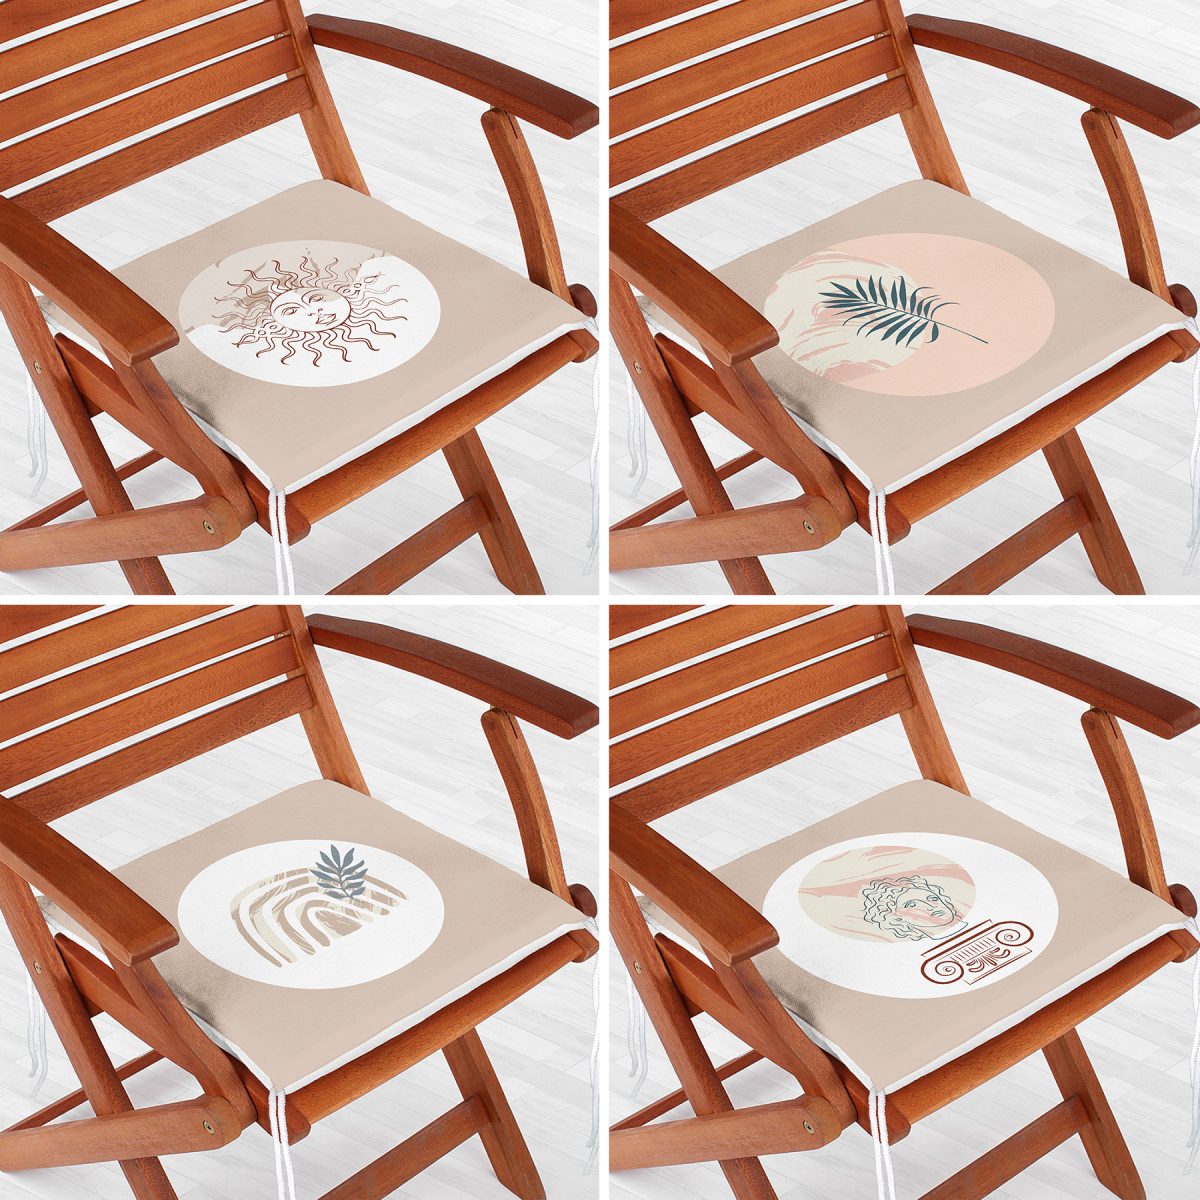 4'lü Bohem Tasarımlı Dijital Baskılı Fermuarlı Sandalye Minderi Seti Realhomes